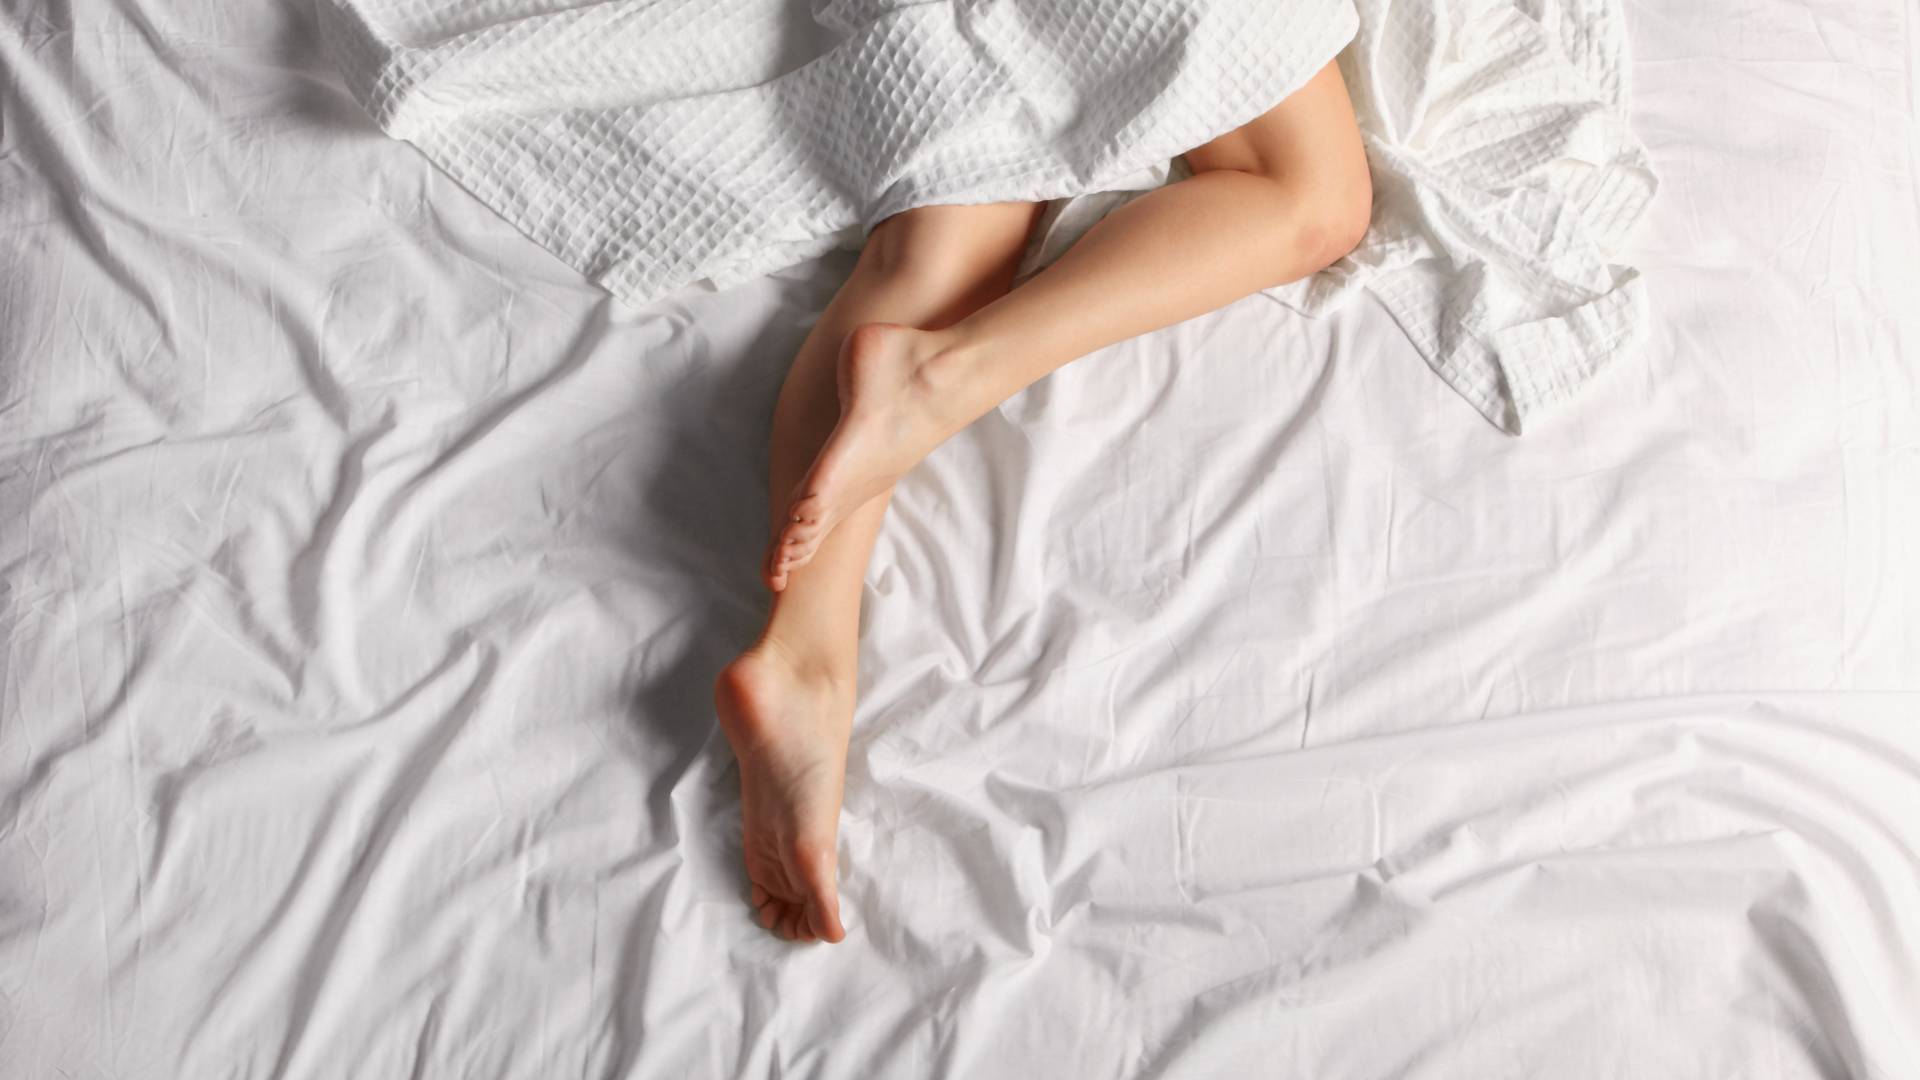 A meztelenül alvás nem jó a hőségben, de van más megoldás